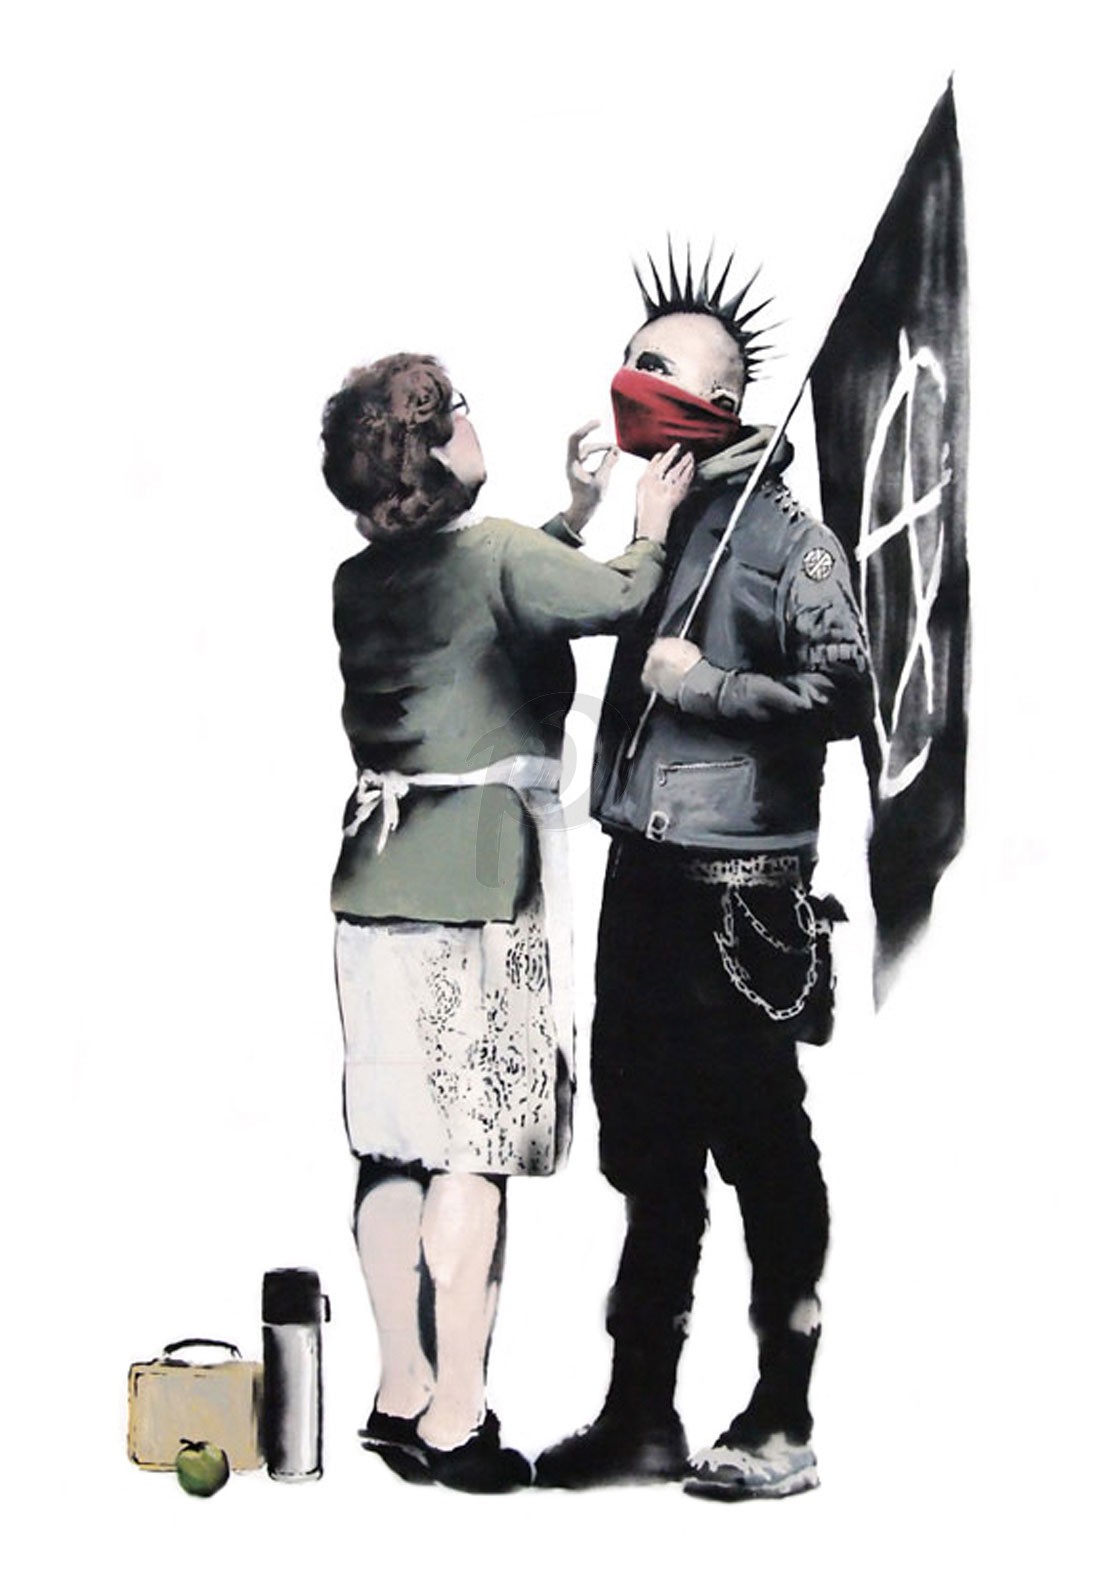 最新デザインの バンクシー パンク ロック 無政府主義者 激レア グラフィティ 3枚組 2ドル札 Mother And Anarchist Punk Banksy アナーキシストと母親 美術 工芸品 Reachahand Org